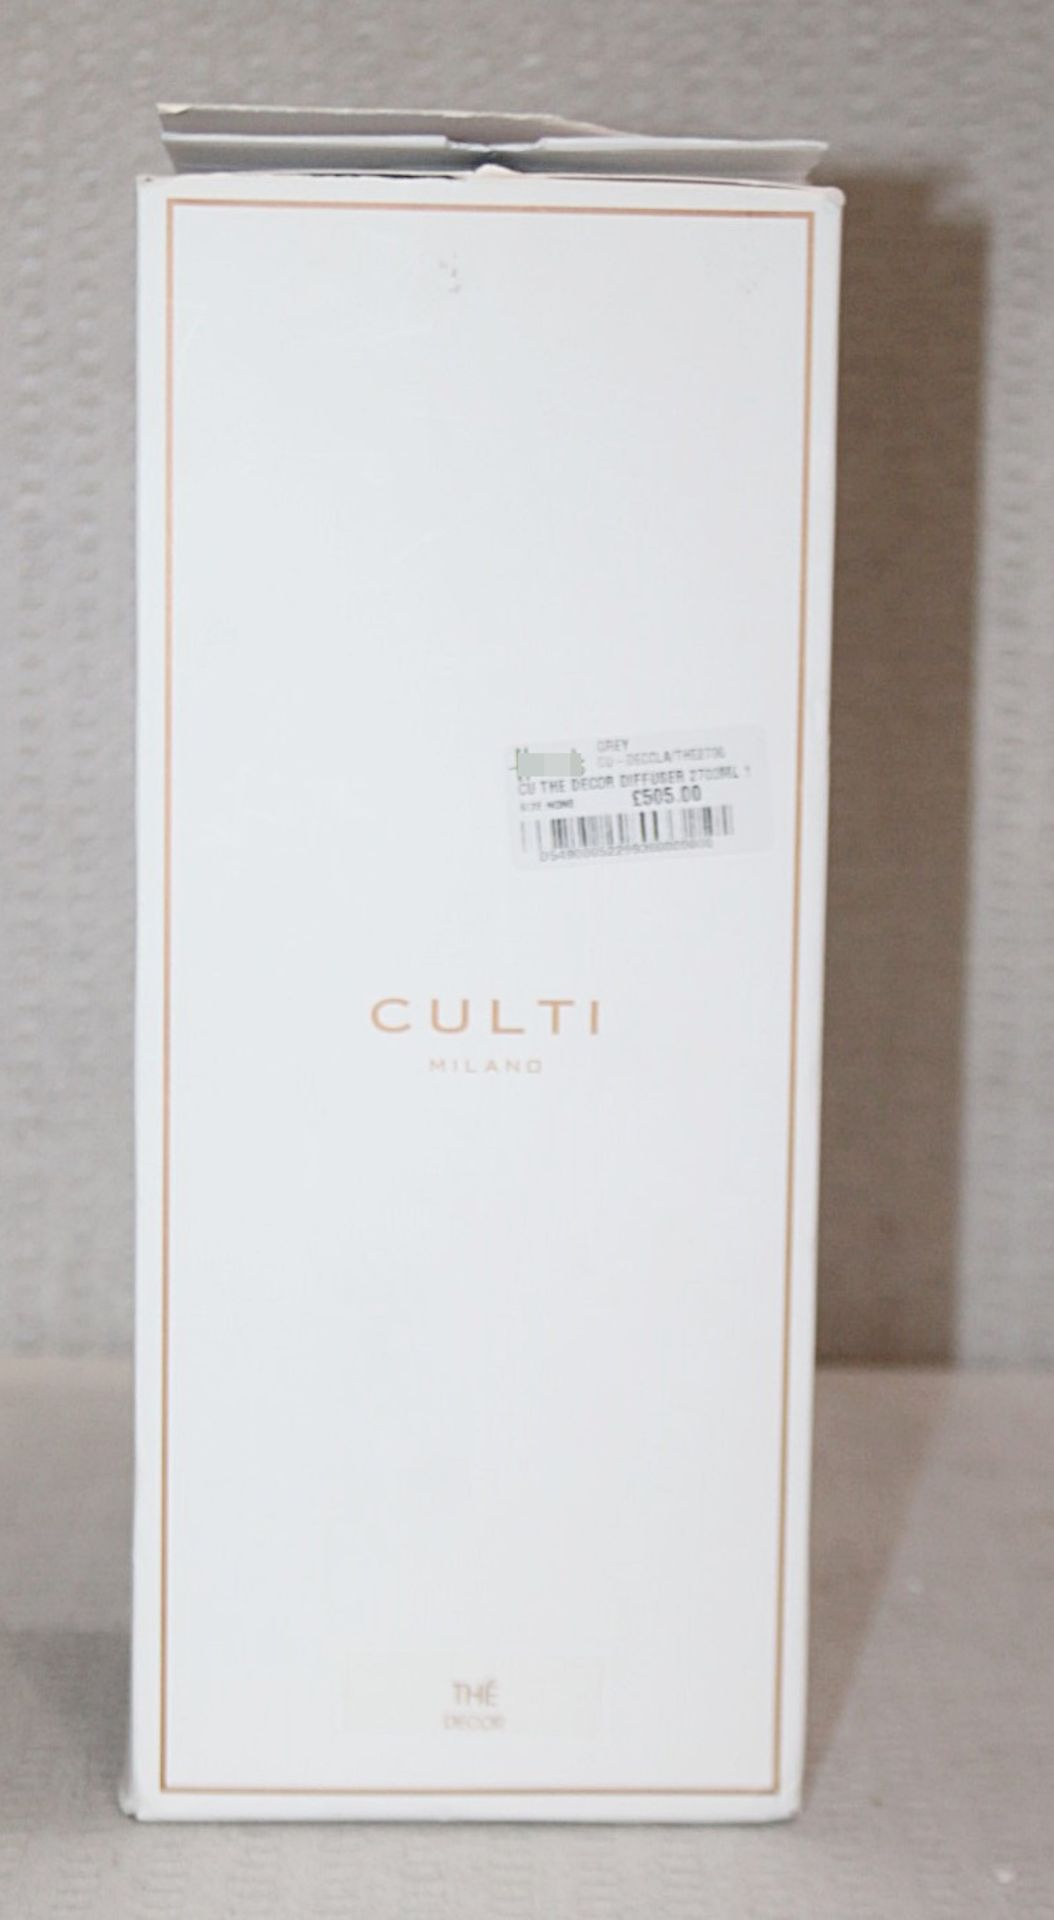 1 x CULTI 'Mareminerale Decor' Home Diffuser 2700ml - Original Price £505.00 - Unused Boxed - Image 5 of 5